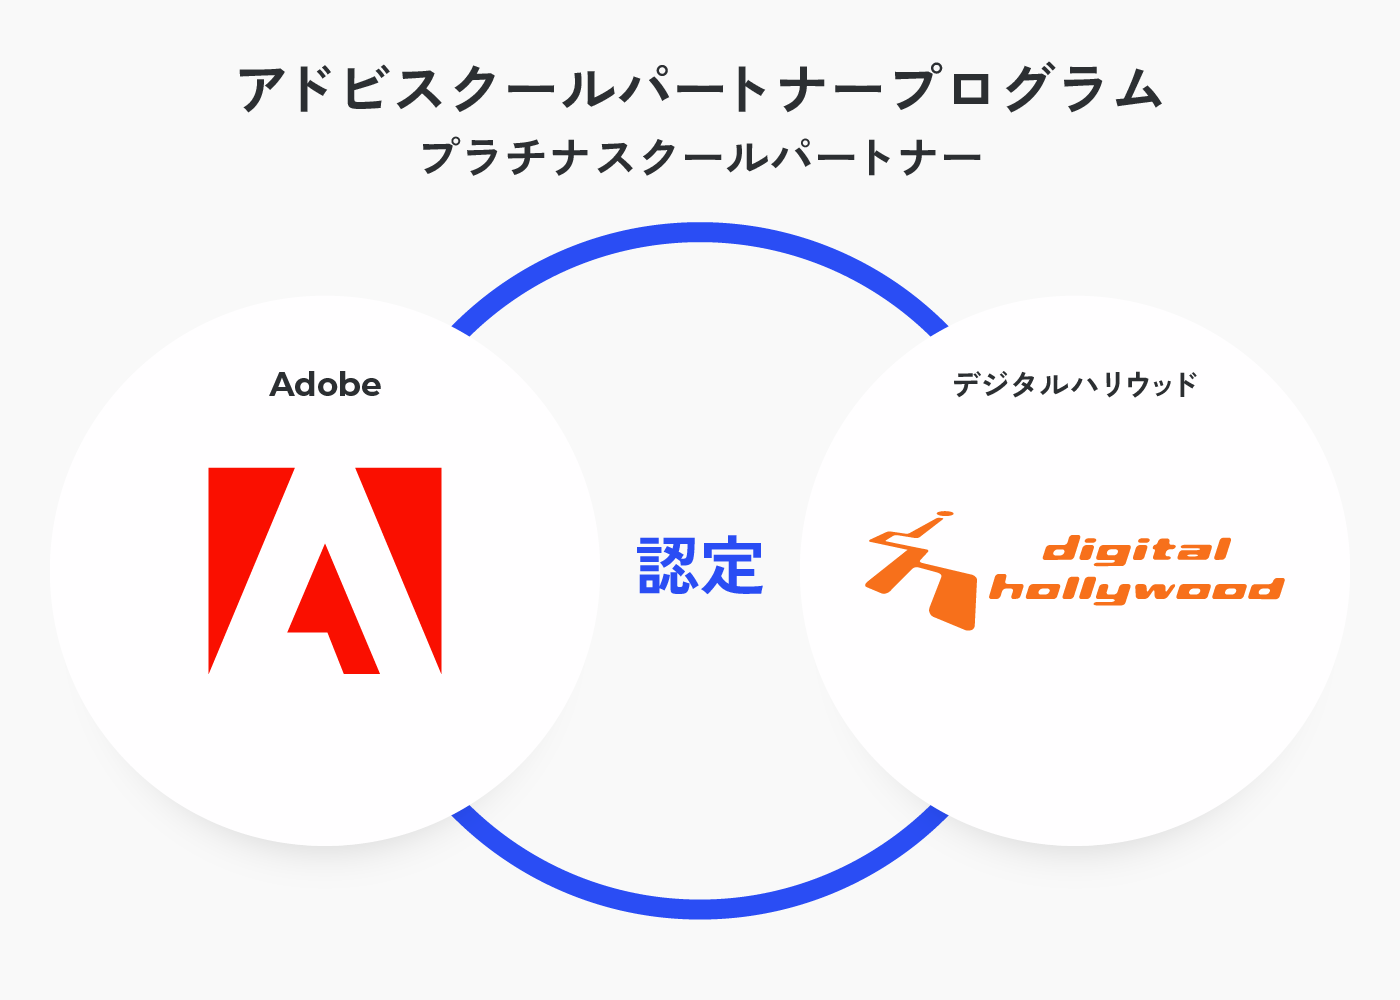 Adobeはデジハリオンラインスクールをプラチナスクールパートナーとして認定しています。